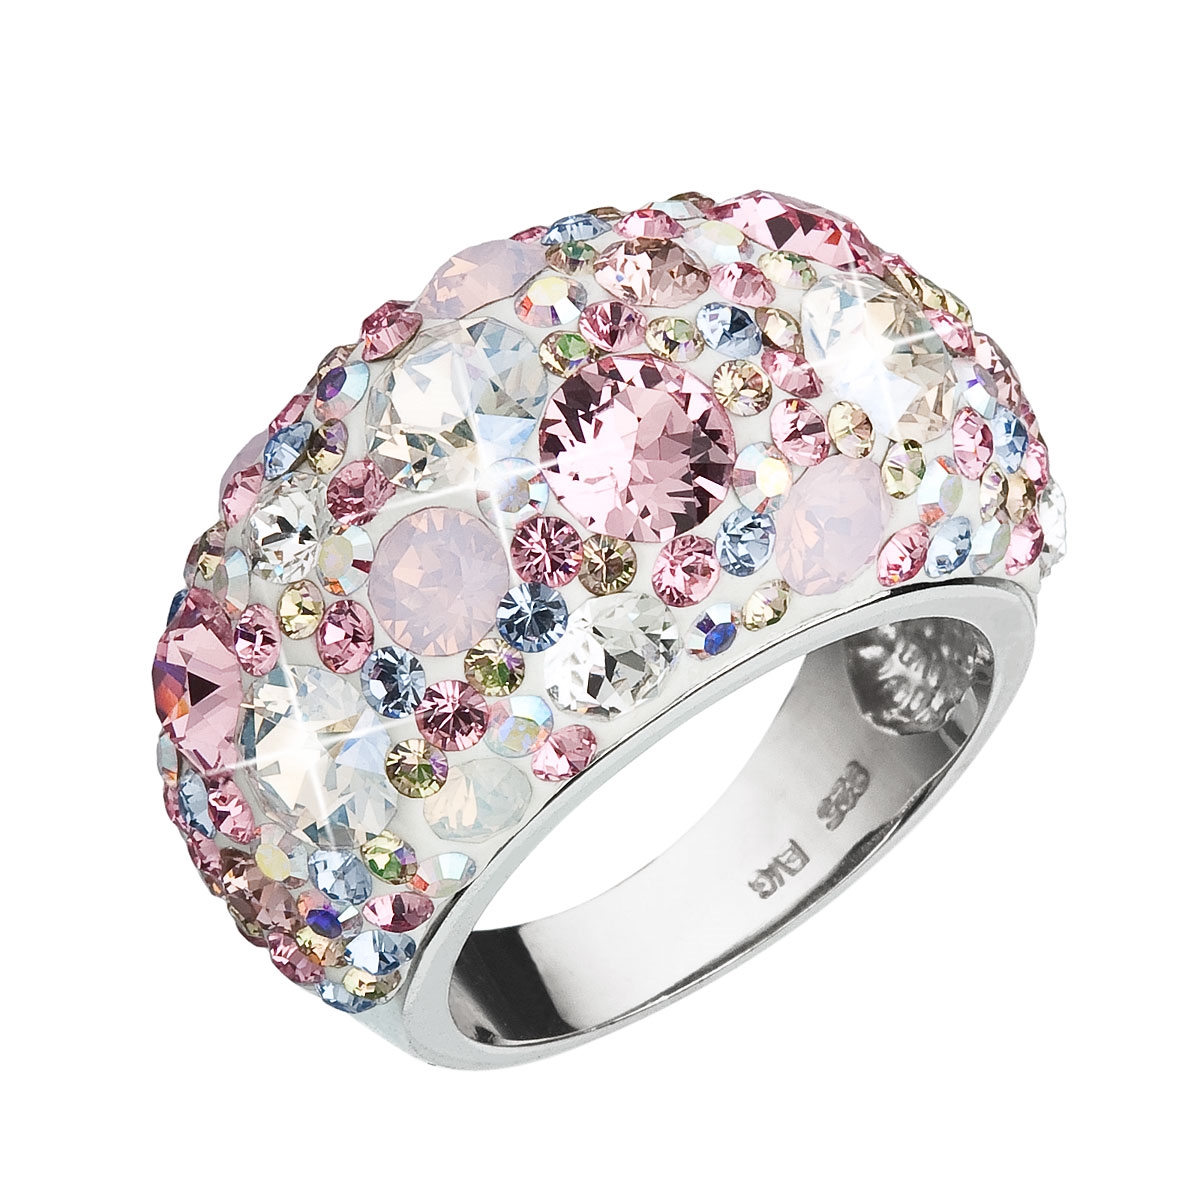 Strieborný prsteň s kryštálmi Crystals from Swarovski ®, Magic Rose